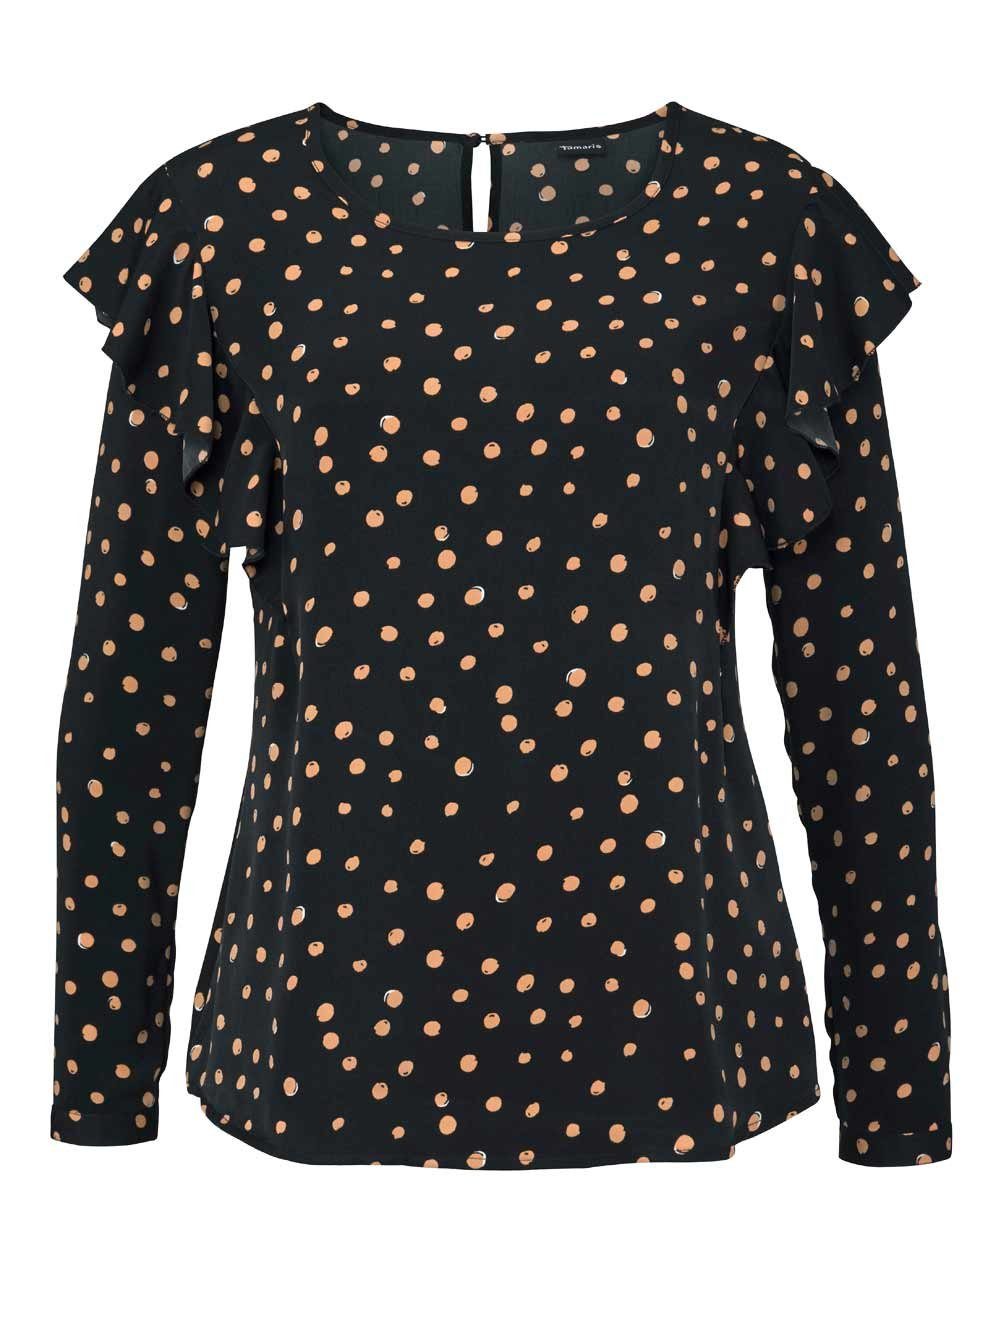 Tamaris Shirtbluse »Tamaris Damen Marken-Bluse mit Volants, schwarz-beige«  online kaufen | OTTO